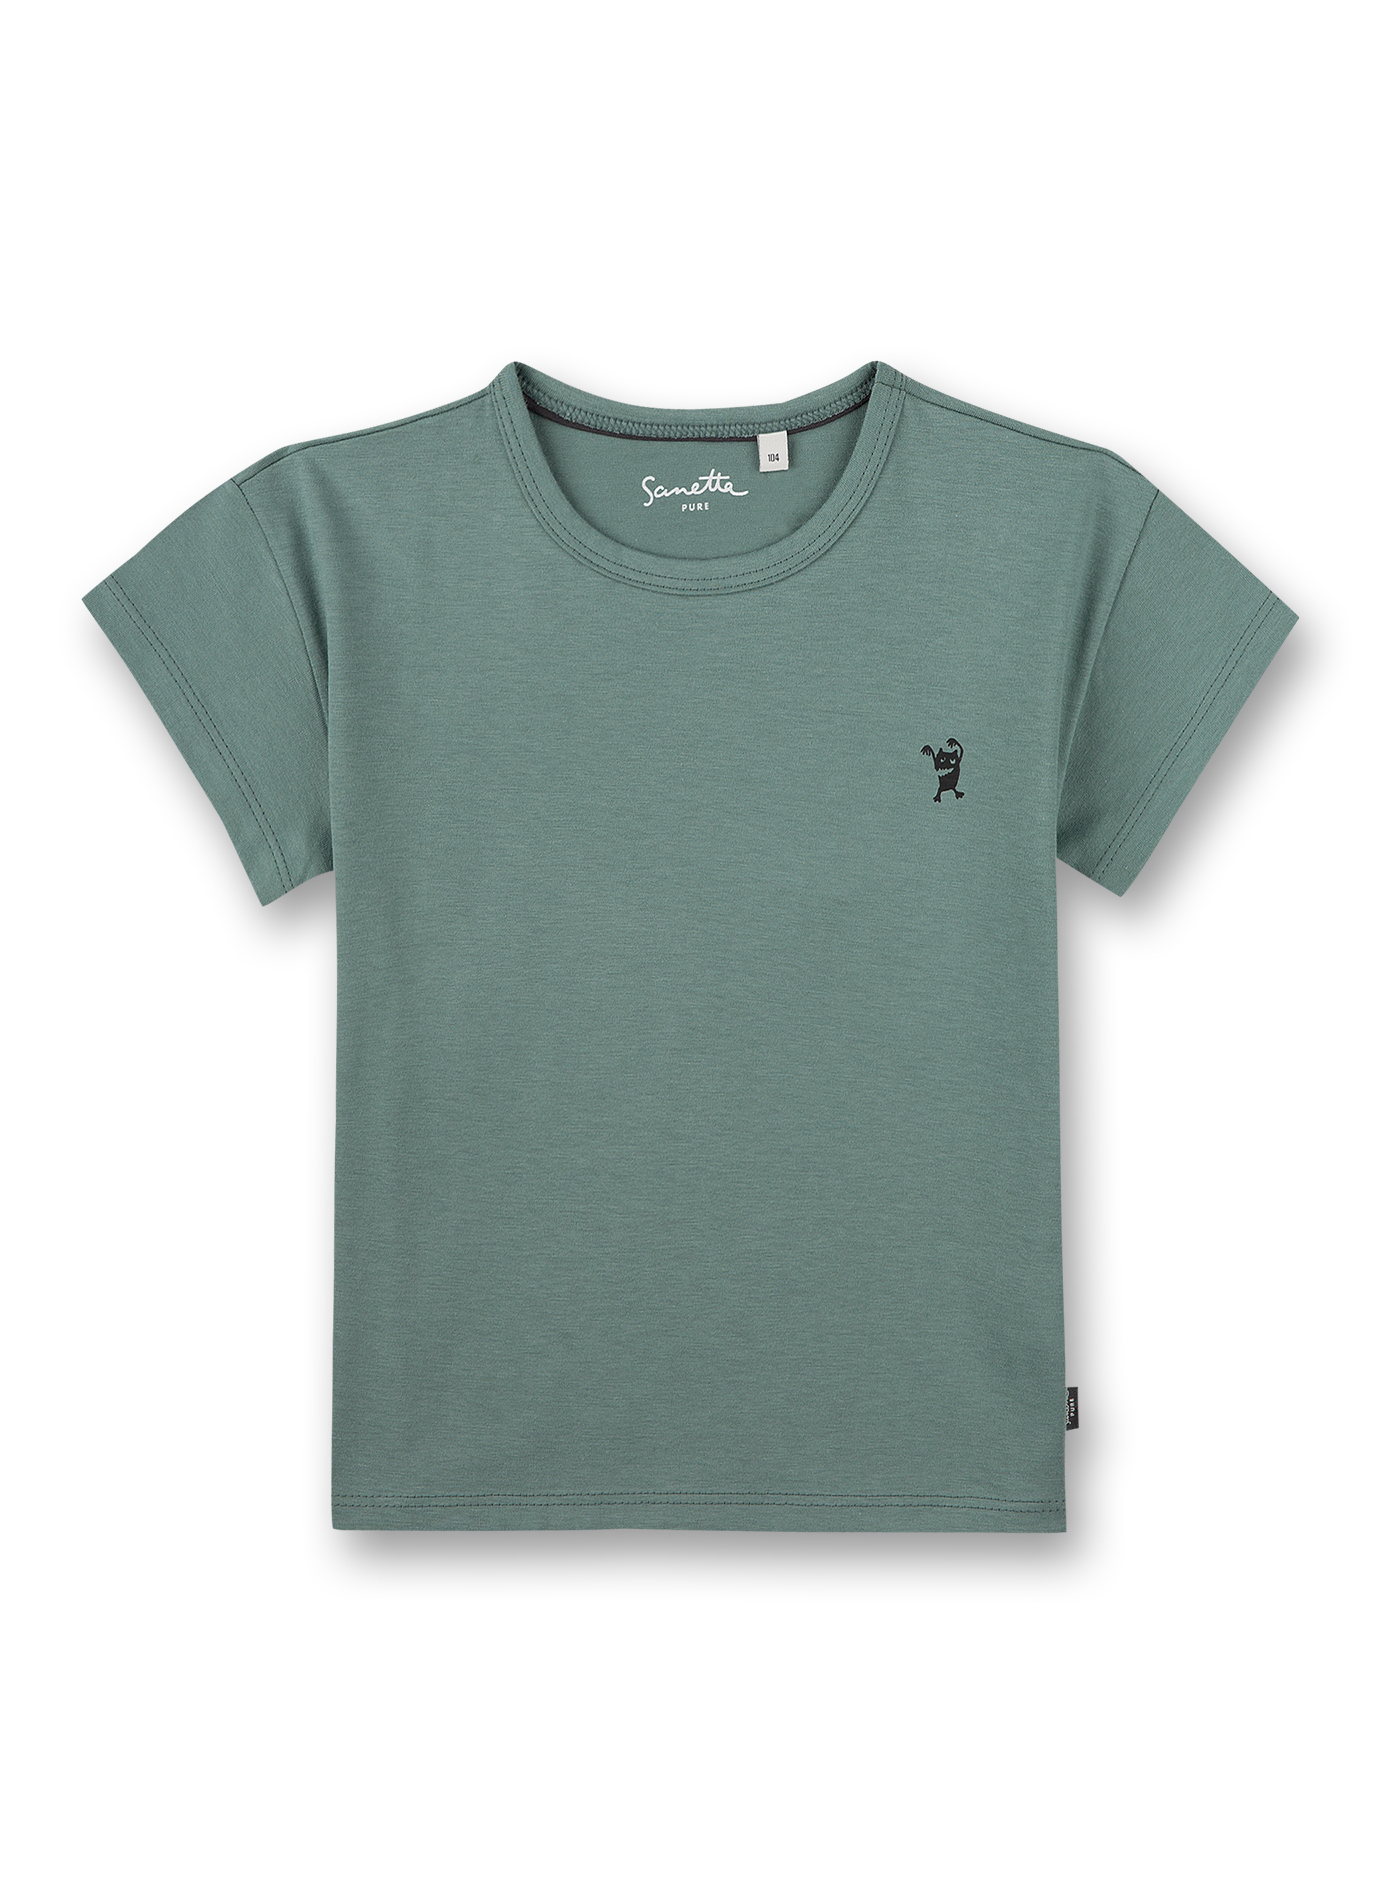 Unisex T-Shirt Grün